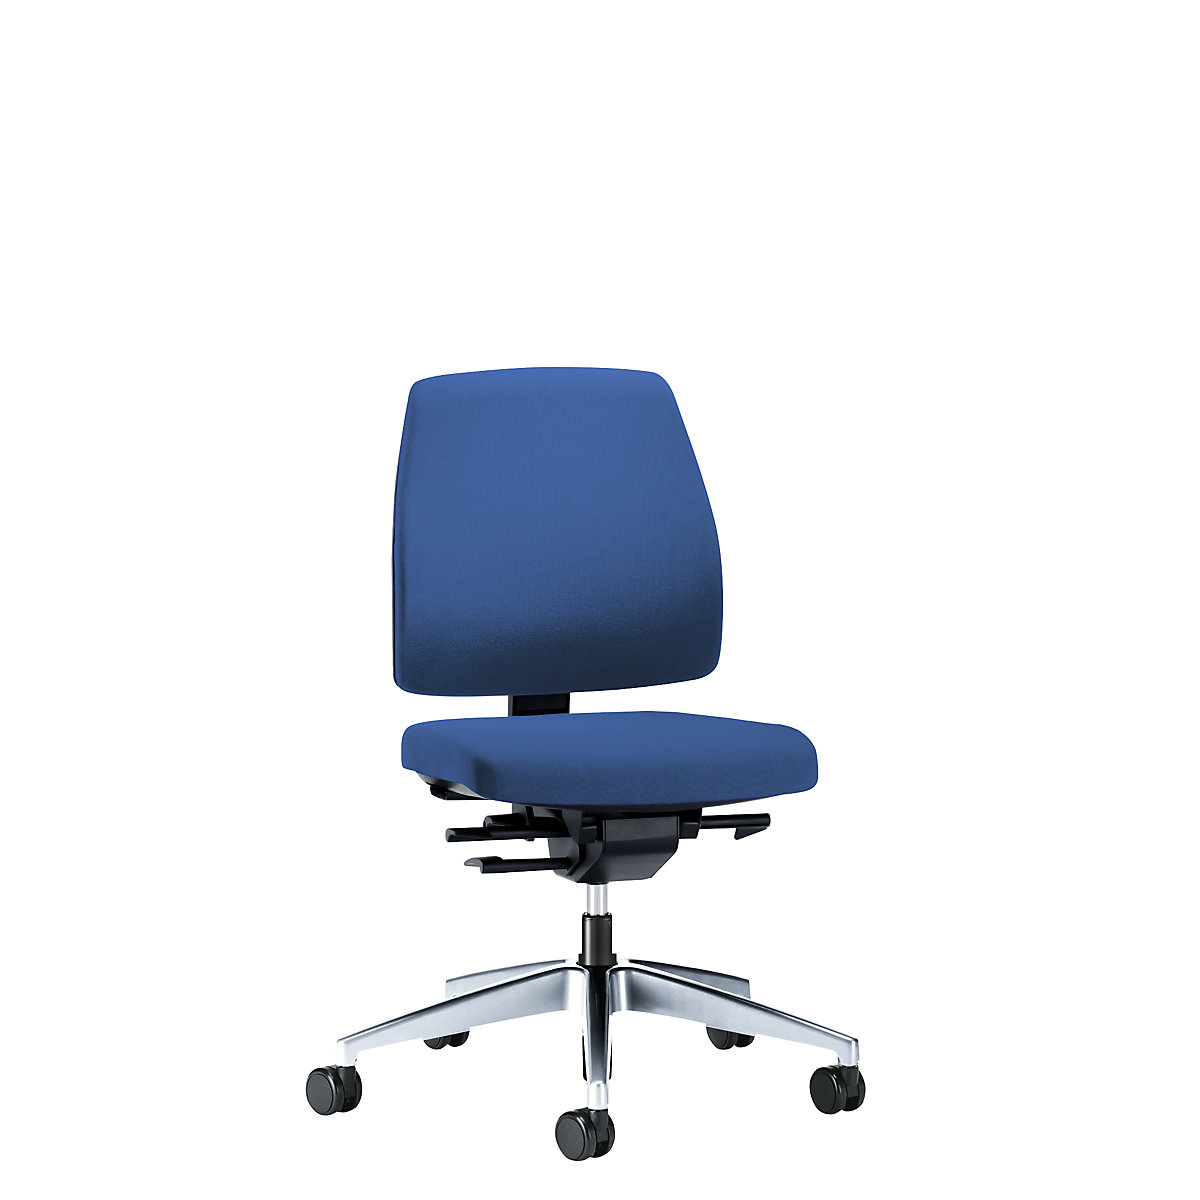 Obrotowe krzesło biurowe GOAL, wys. oparcia 430 mm – interstuhl, szkielet polerowany, z miękkimi rolkami, niebieski gencjanowy, głęb. siedziska 410 mm-4